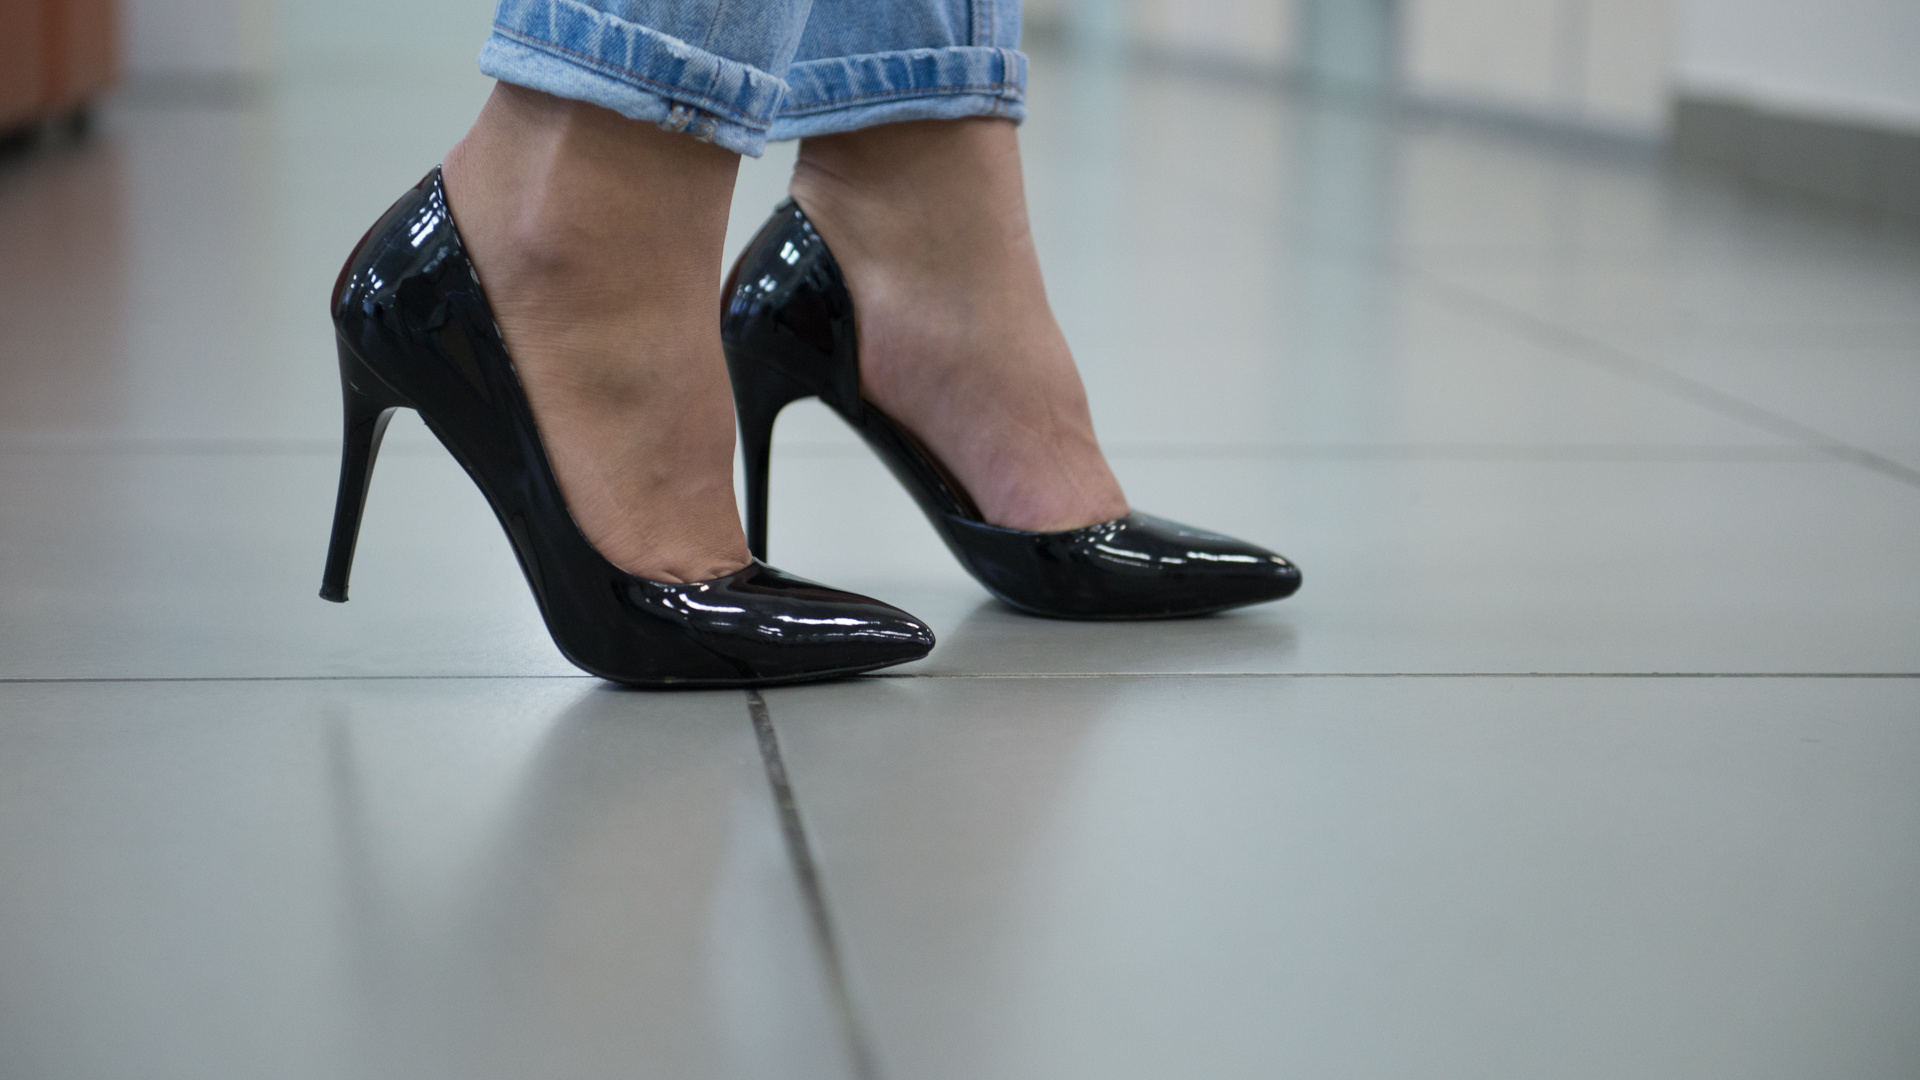 «Зачем в этих ботинках отверстия?»: обсуждаем женскую обувь с мужчинами